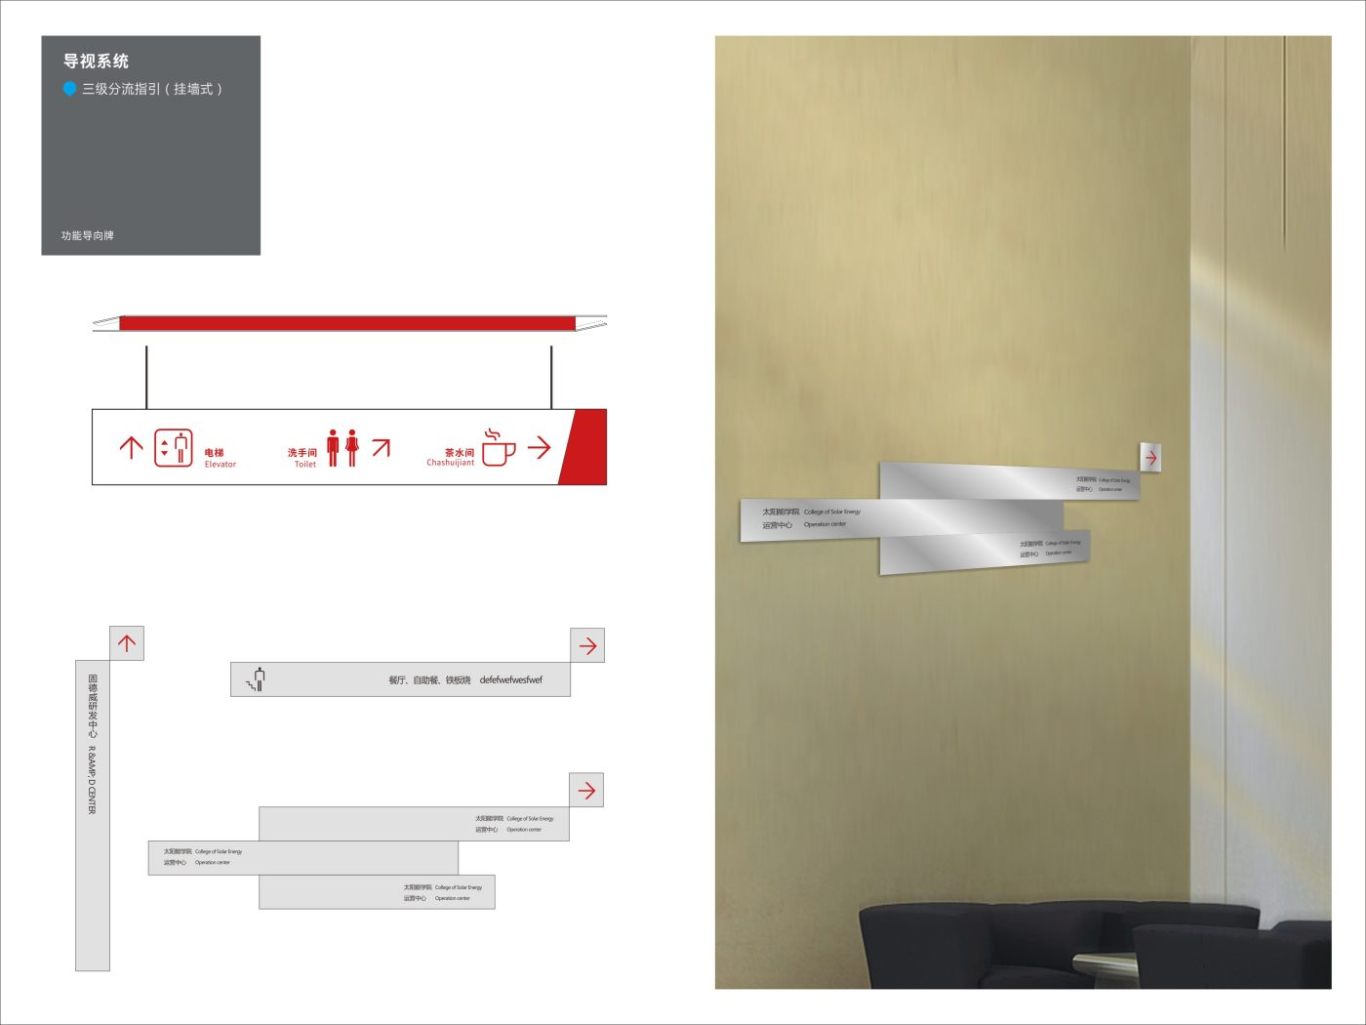 江苏固德威办公大楼导视标识系统设计案例图9